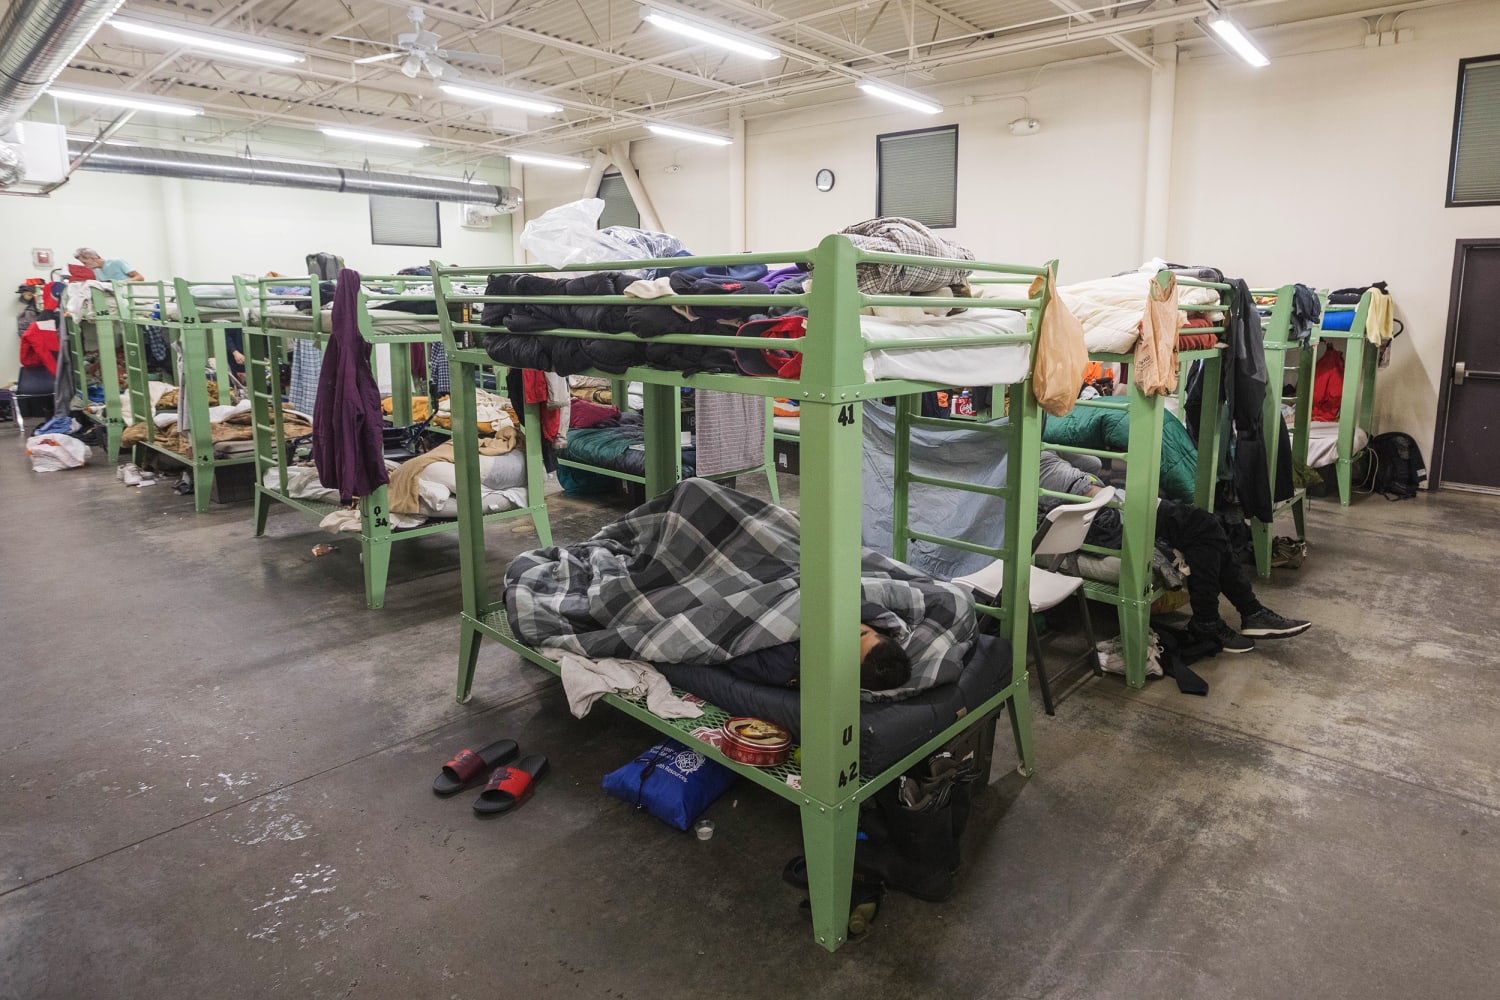 ¿Cuántos refugios para personas sin hogar hay en Anchorage?